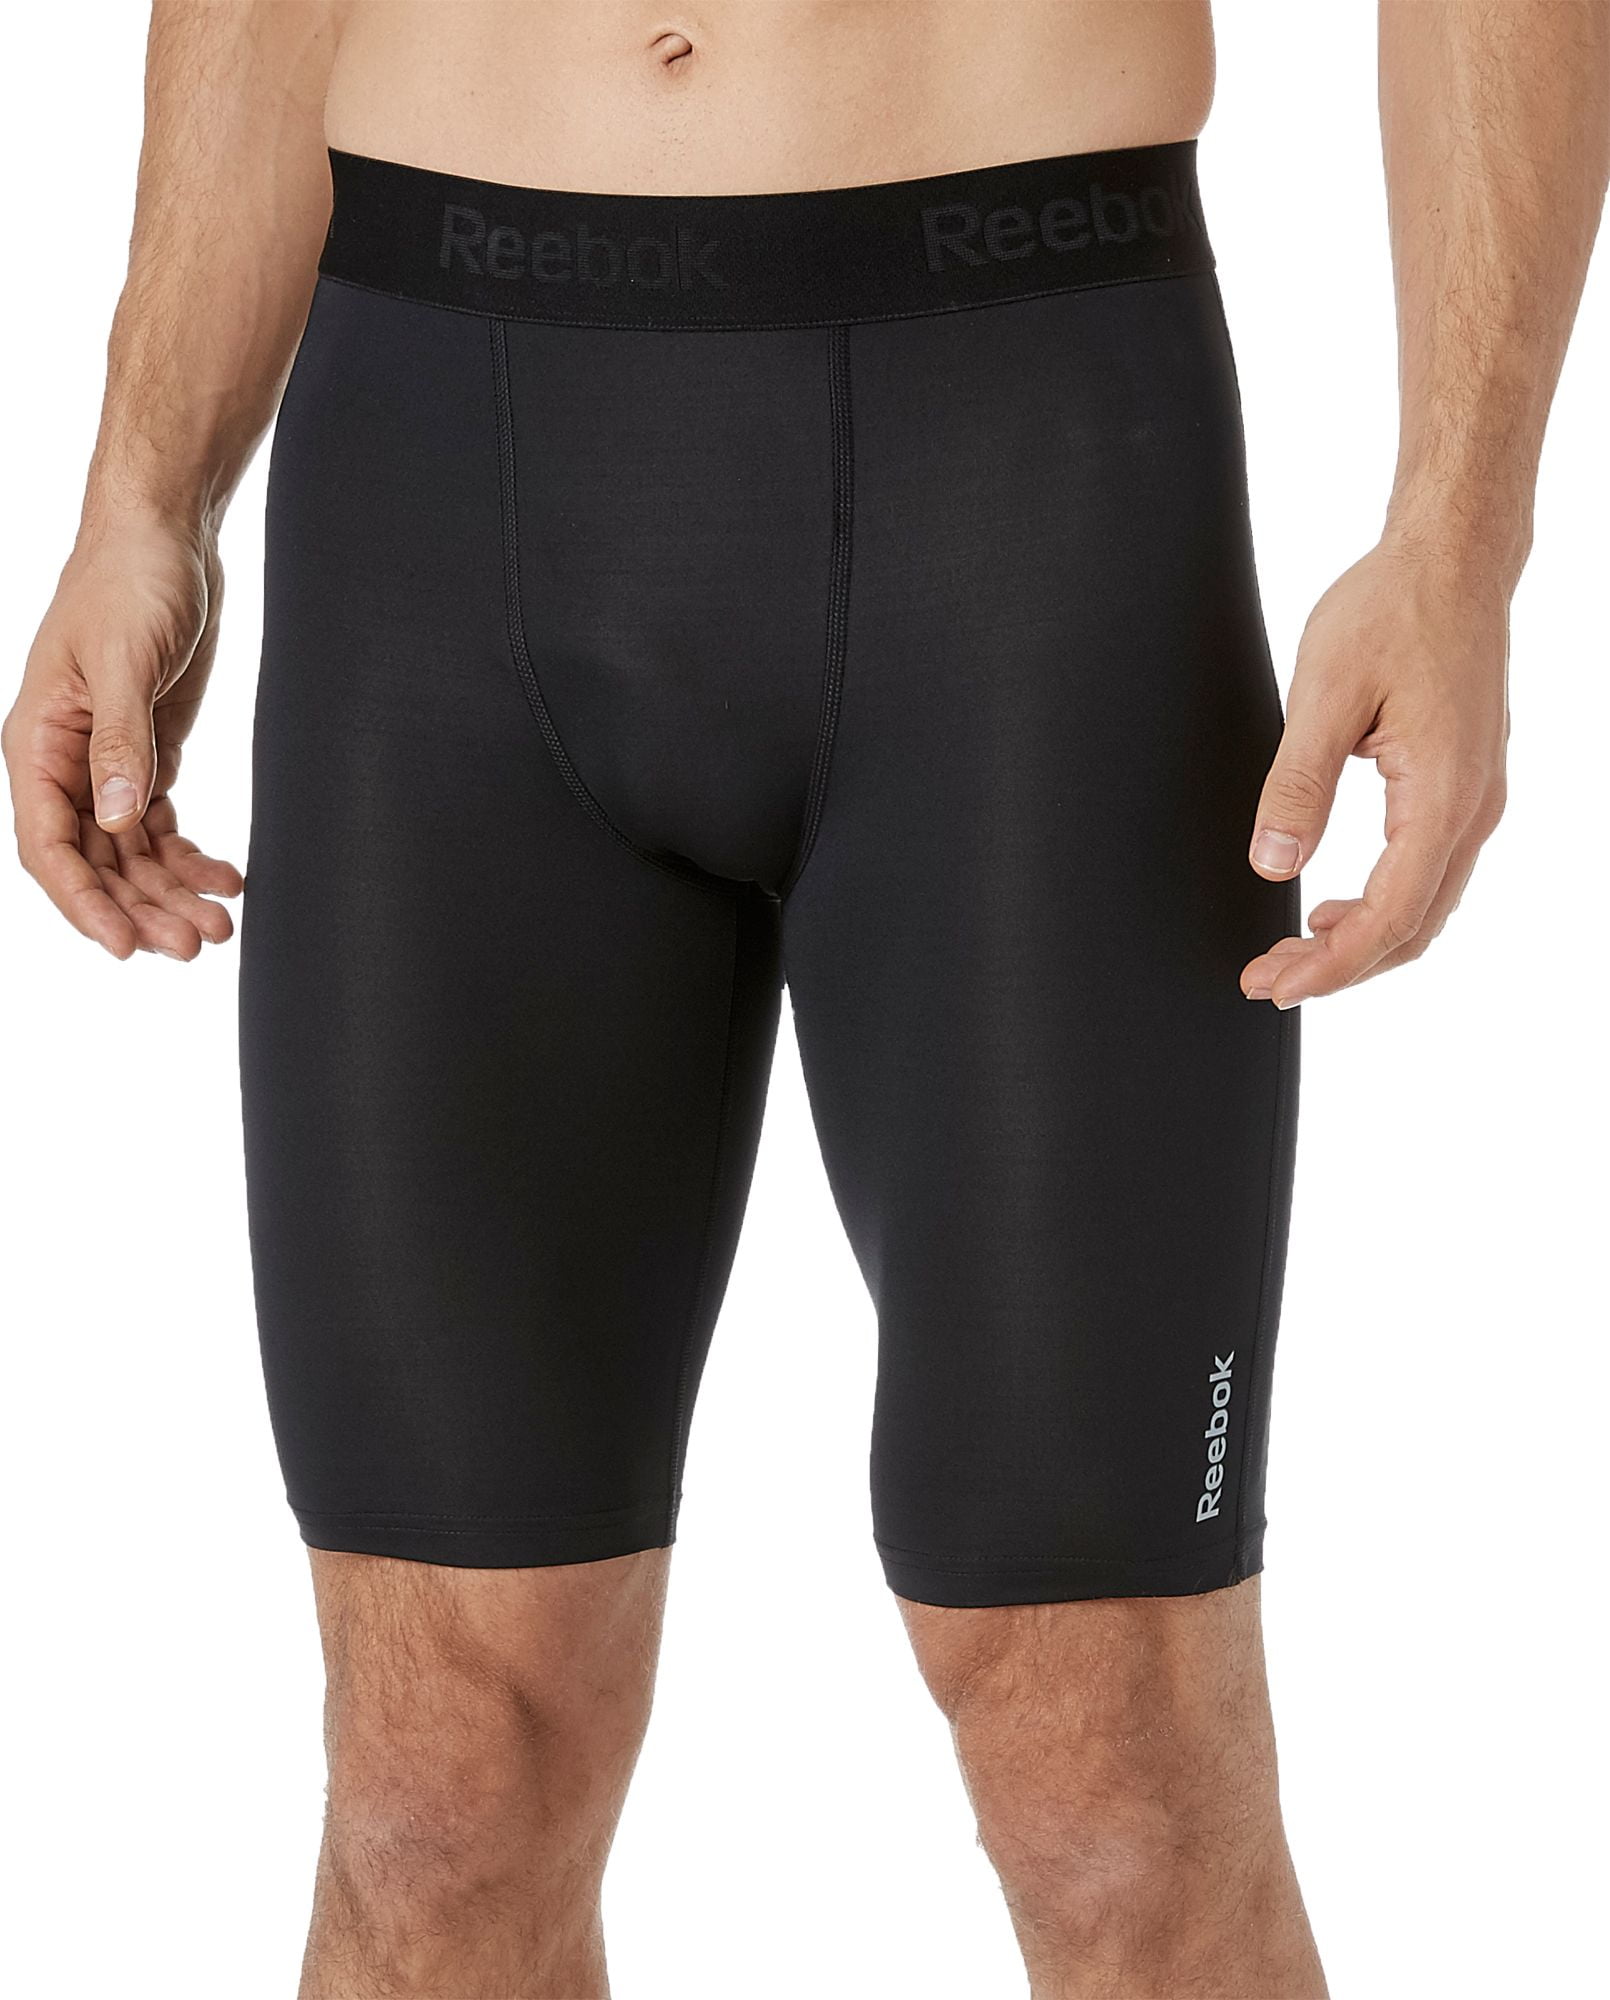 reebok men's compression underwear